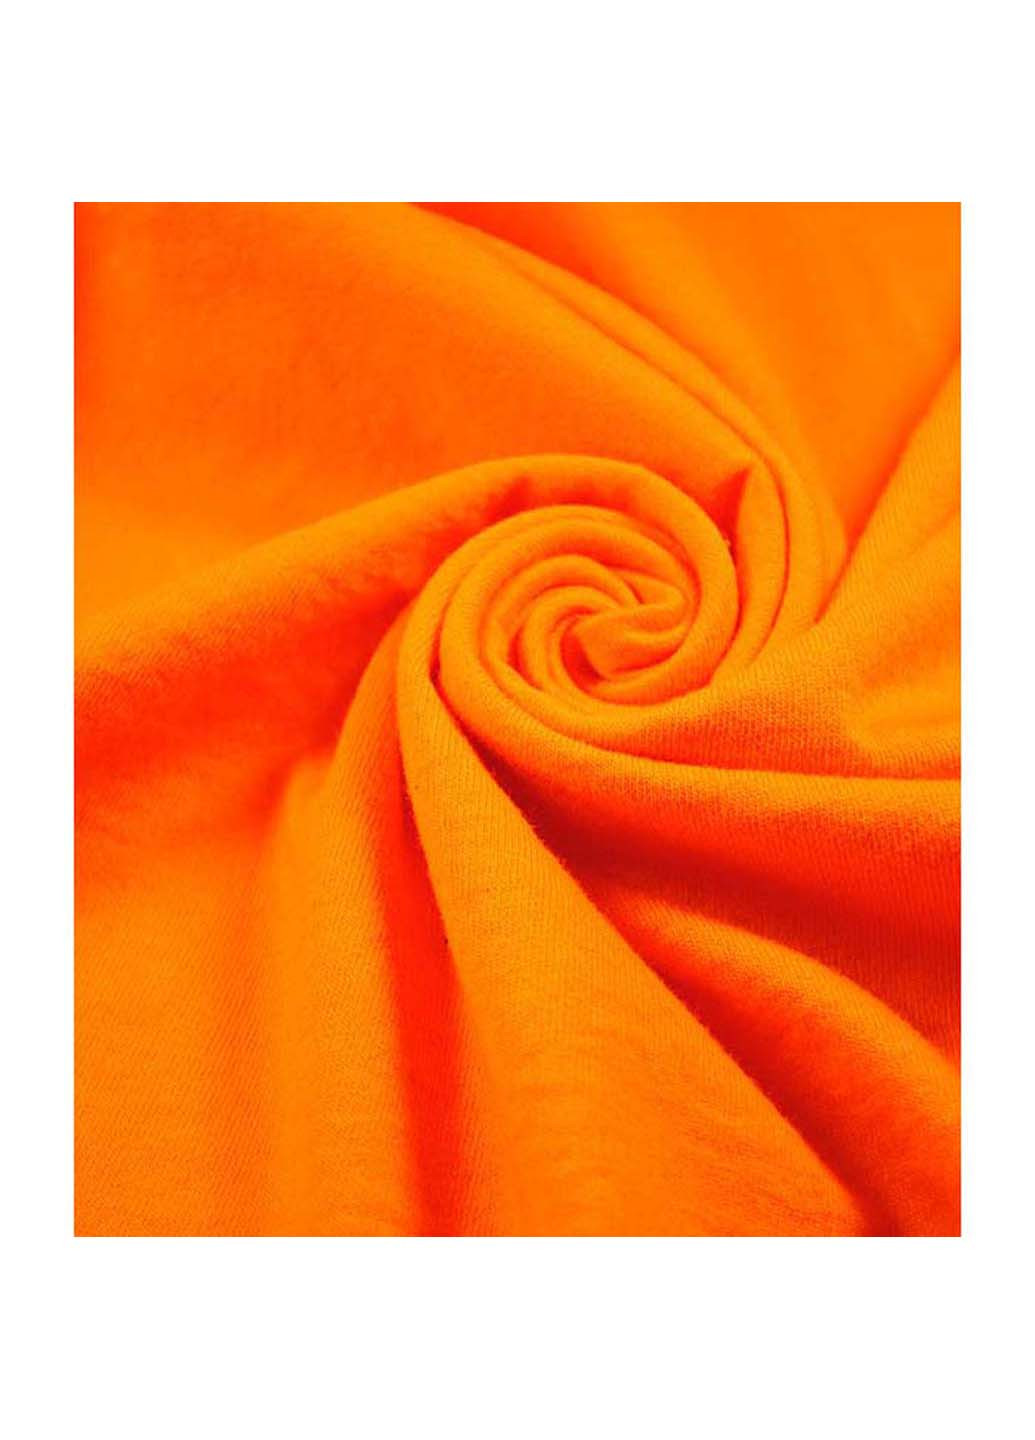 Оранжевая демисезон футболка Fruit of the Loom D061414044L